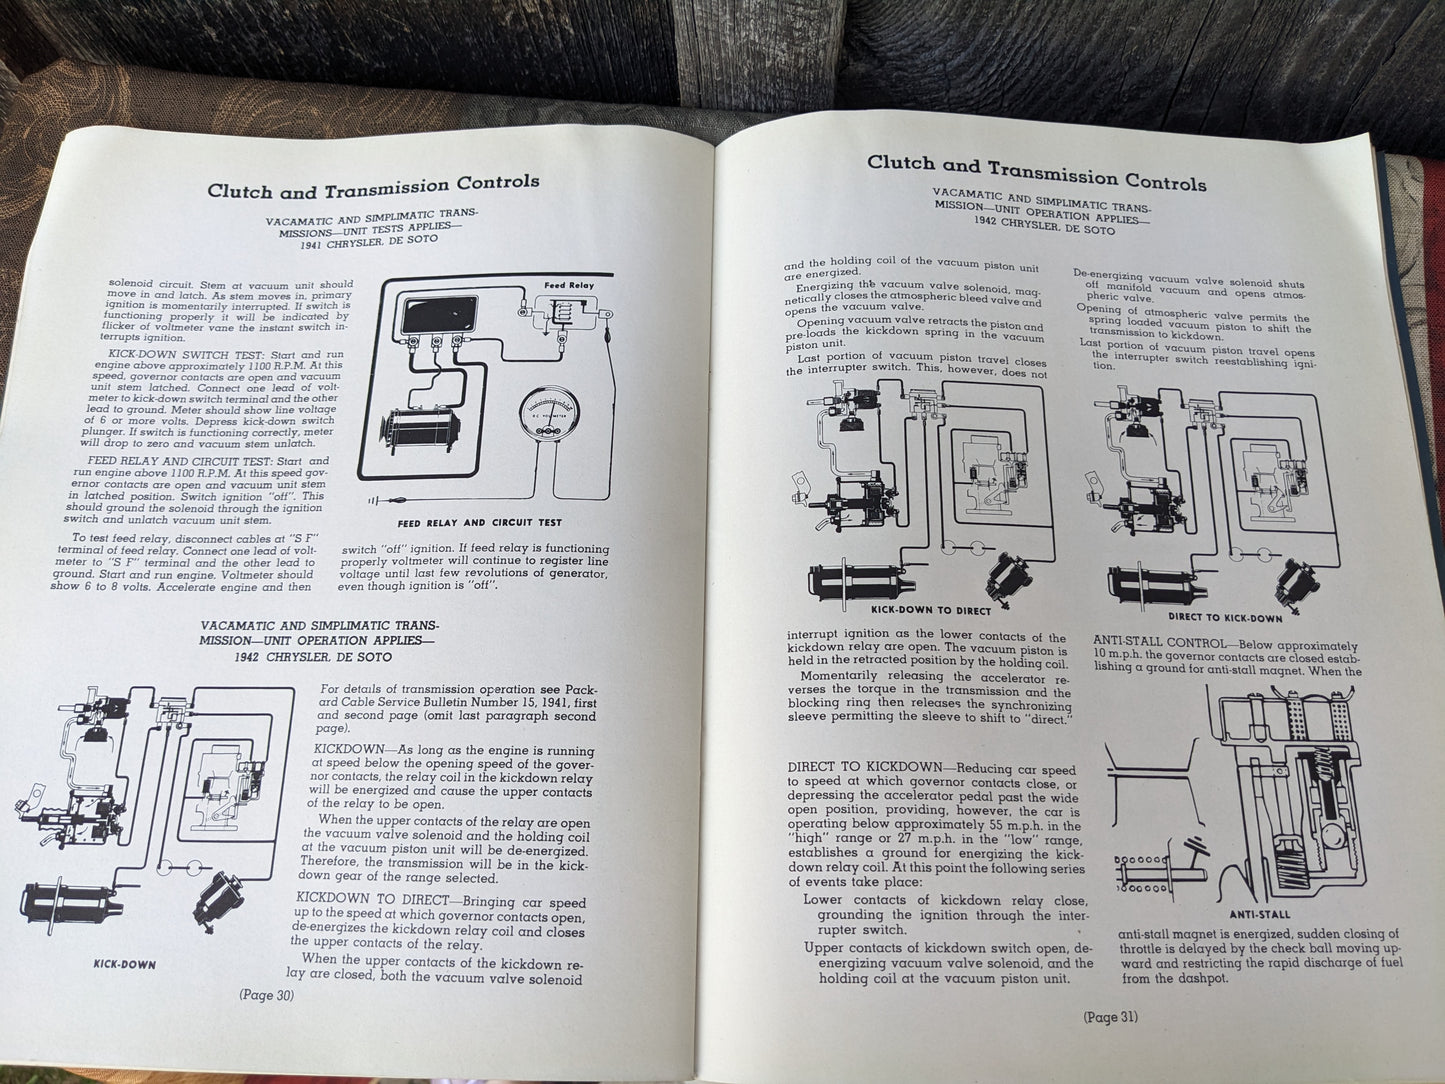 Vintage Packard Certified Re-Wiring Handbook 1942